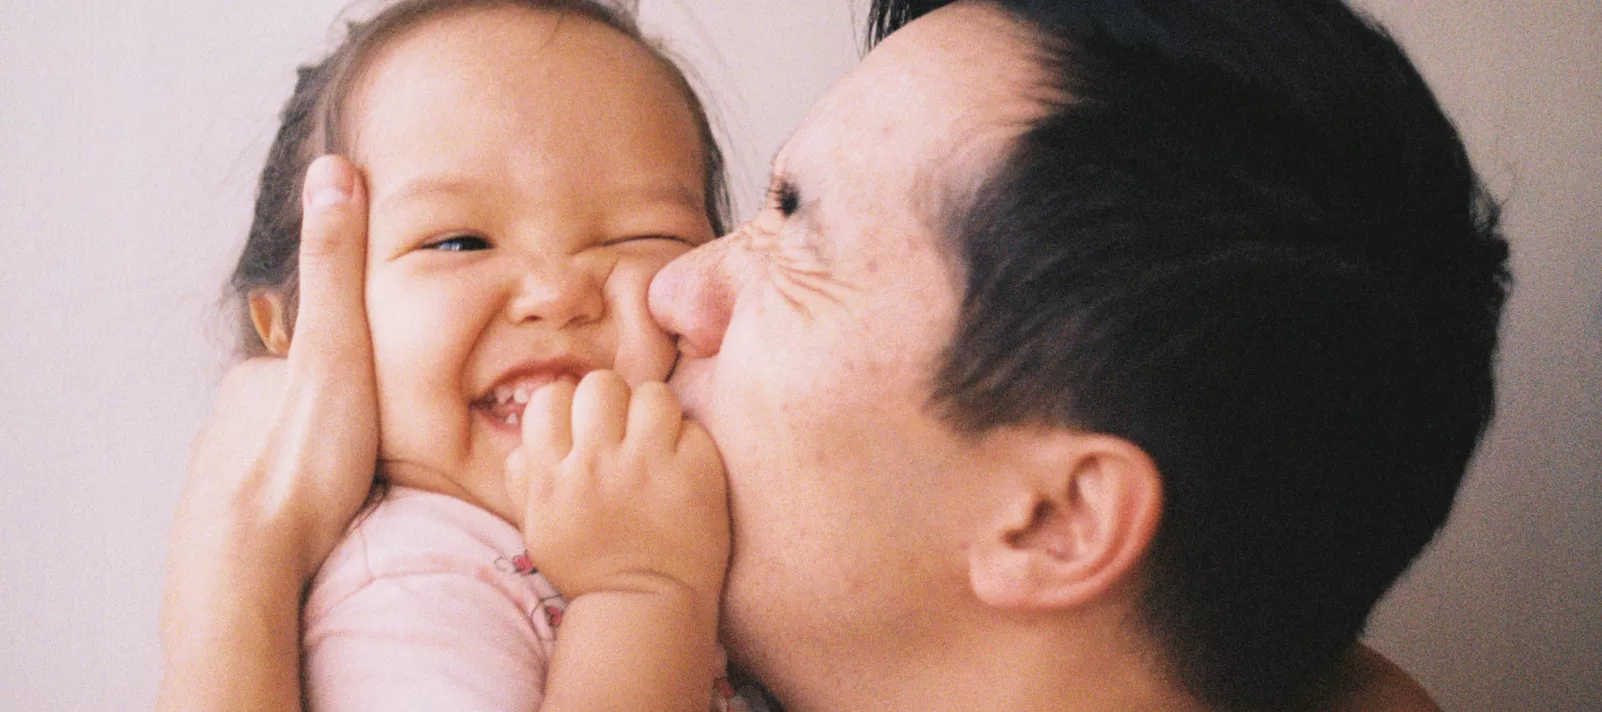 Un père embrasse sa petite fille sur la joue